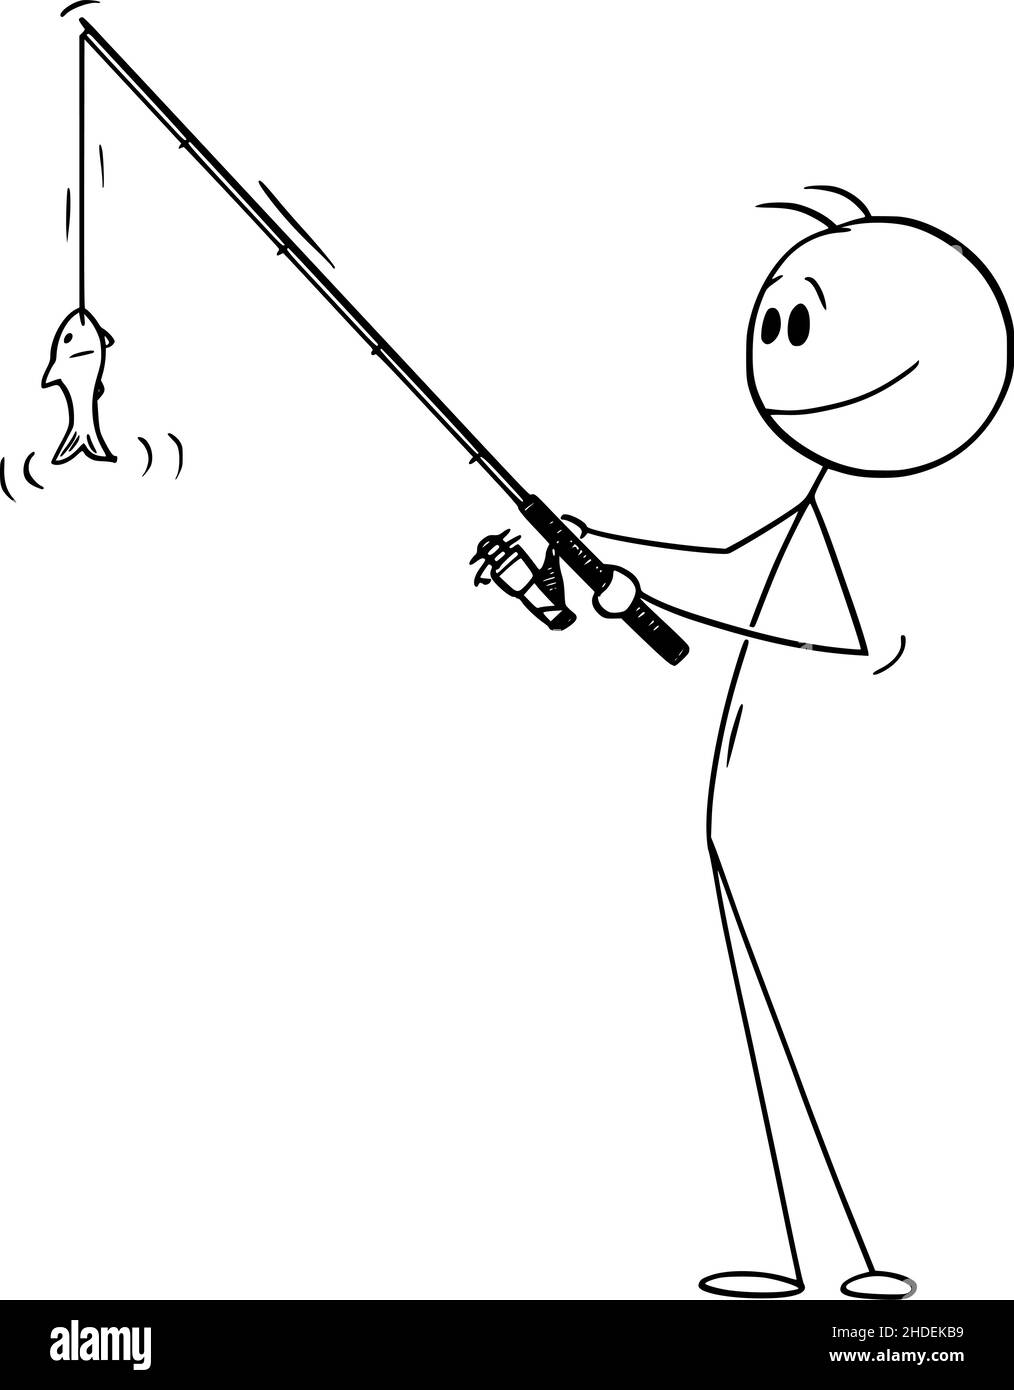 Barre de retenue de pêcheur et pêche de petits poissons , bâton de dessin vectoriel Figure Illustration Illustration de Vecteur